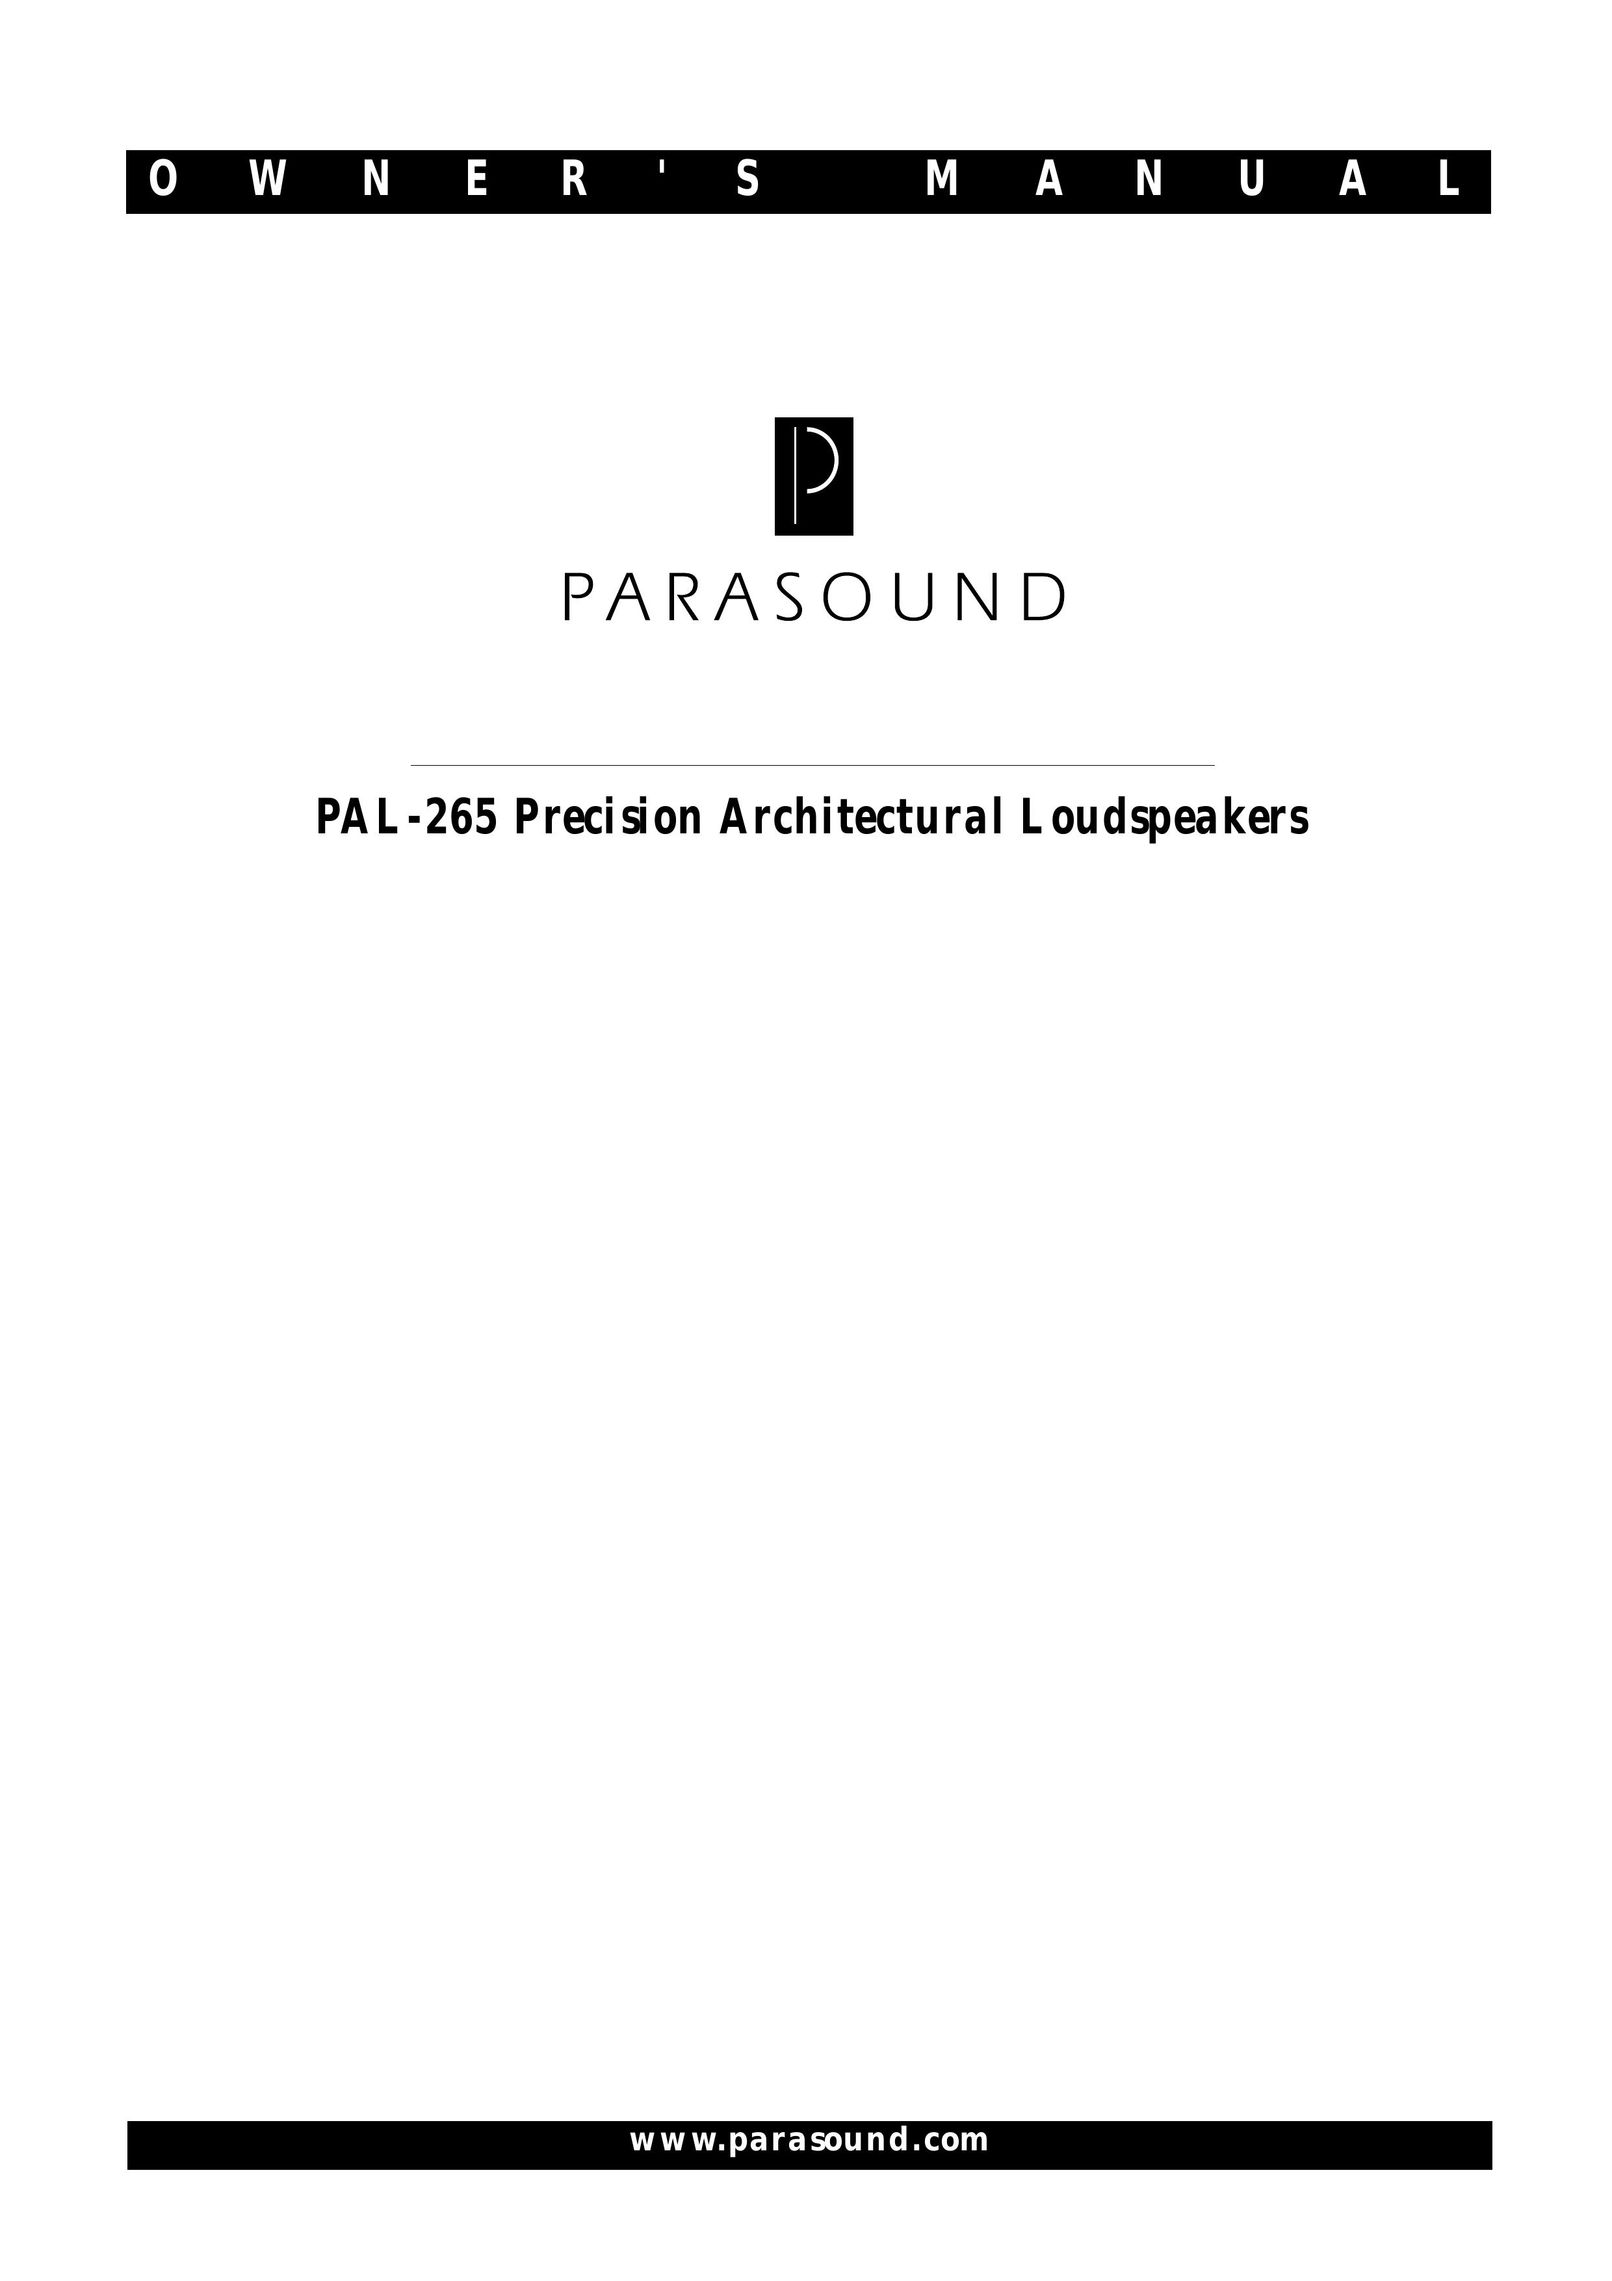 Parasound PAL-265 Speaker User Manual